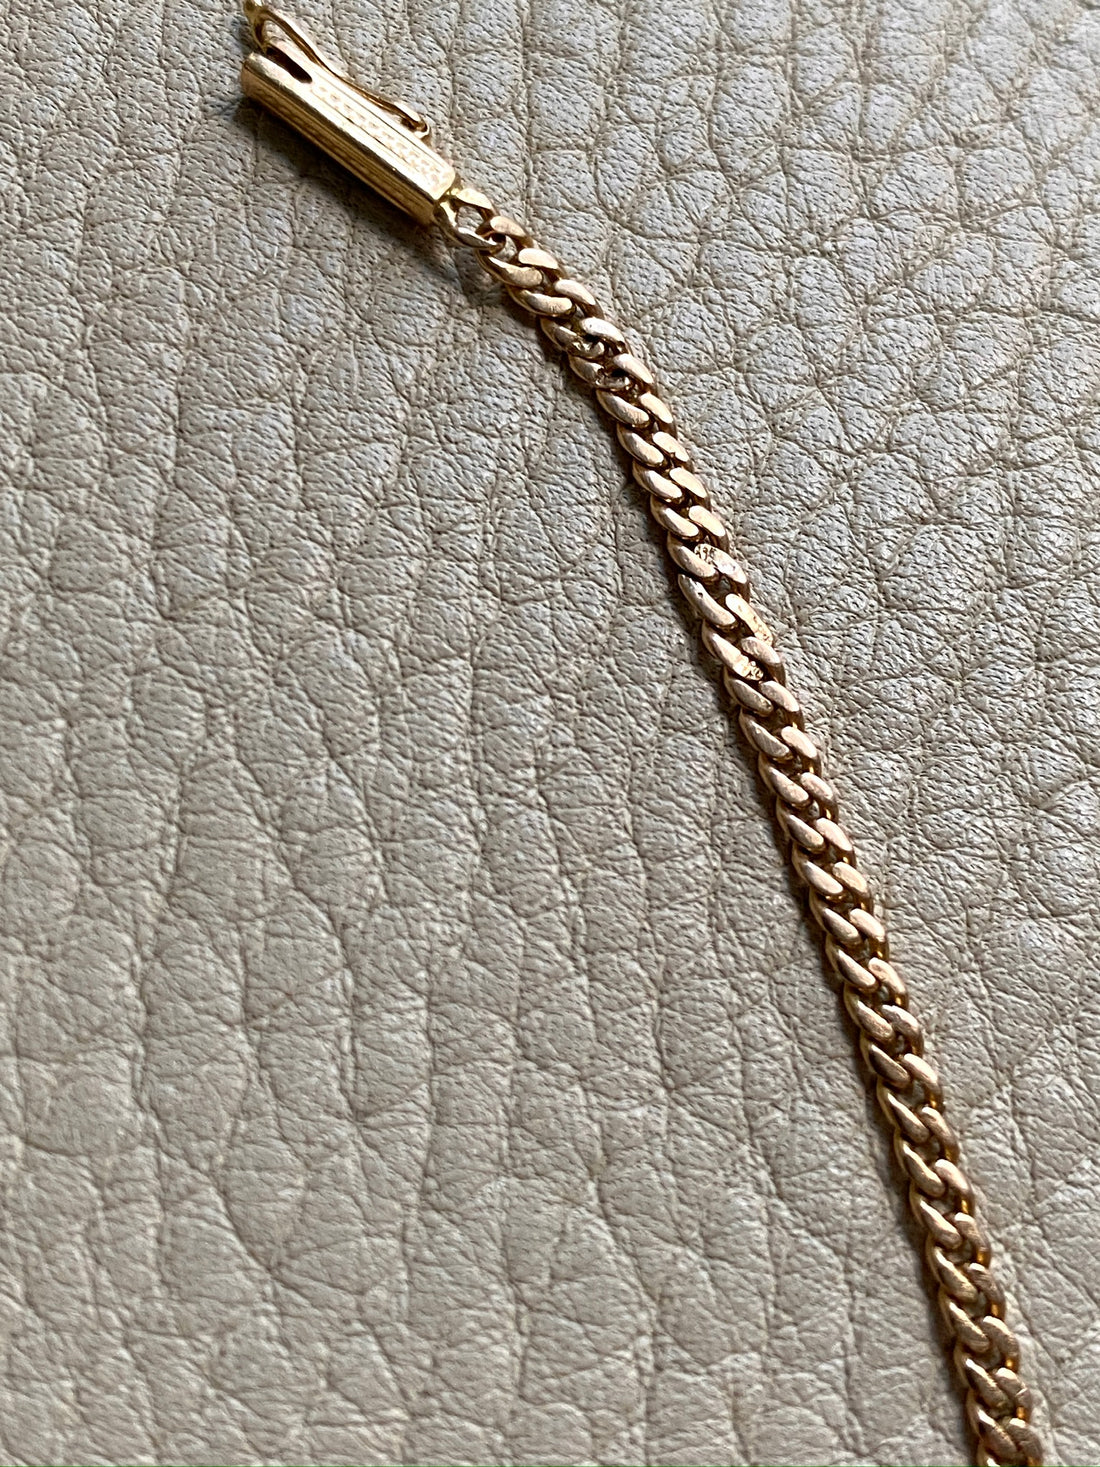 Vintage 18k gold curb bracelet - 7.5 inch length